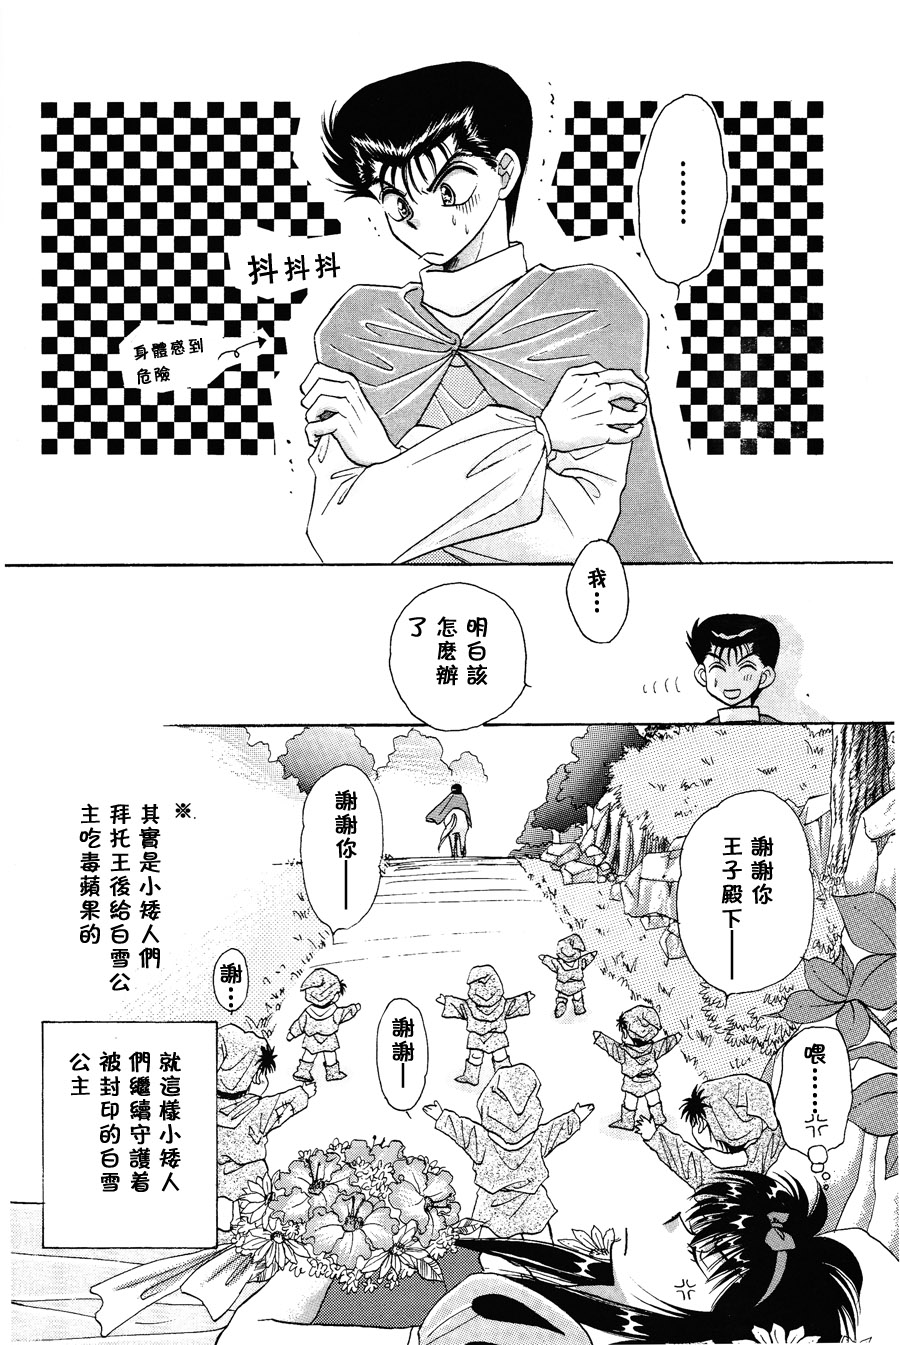 【漫画】fuji《童话王国的问候2》 Img_9516